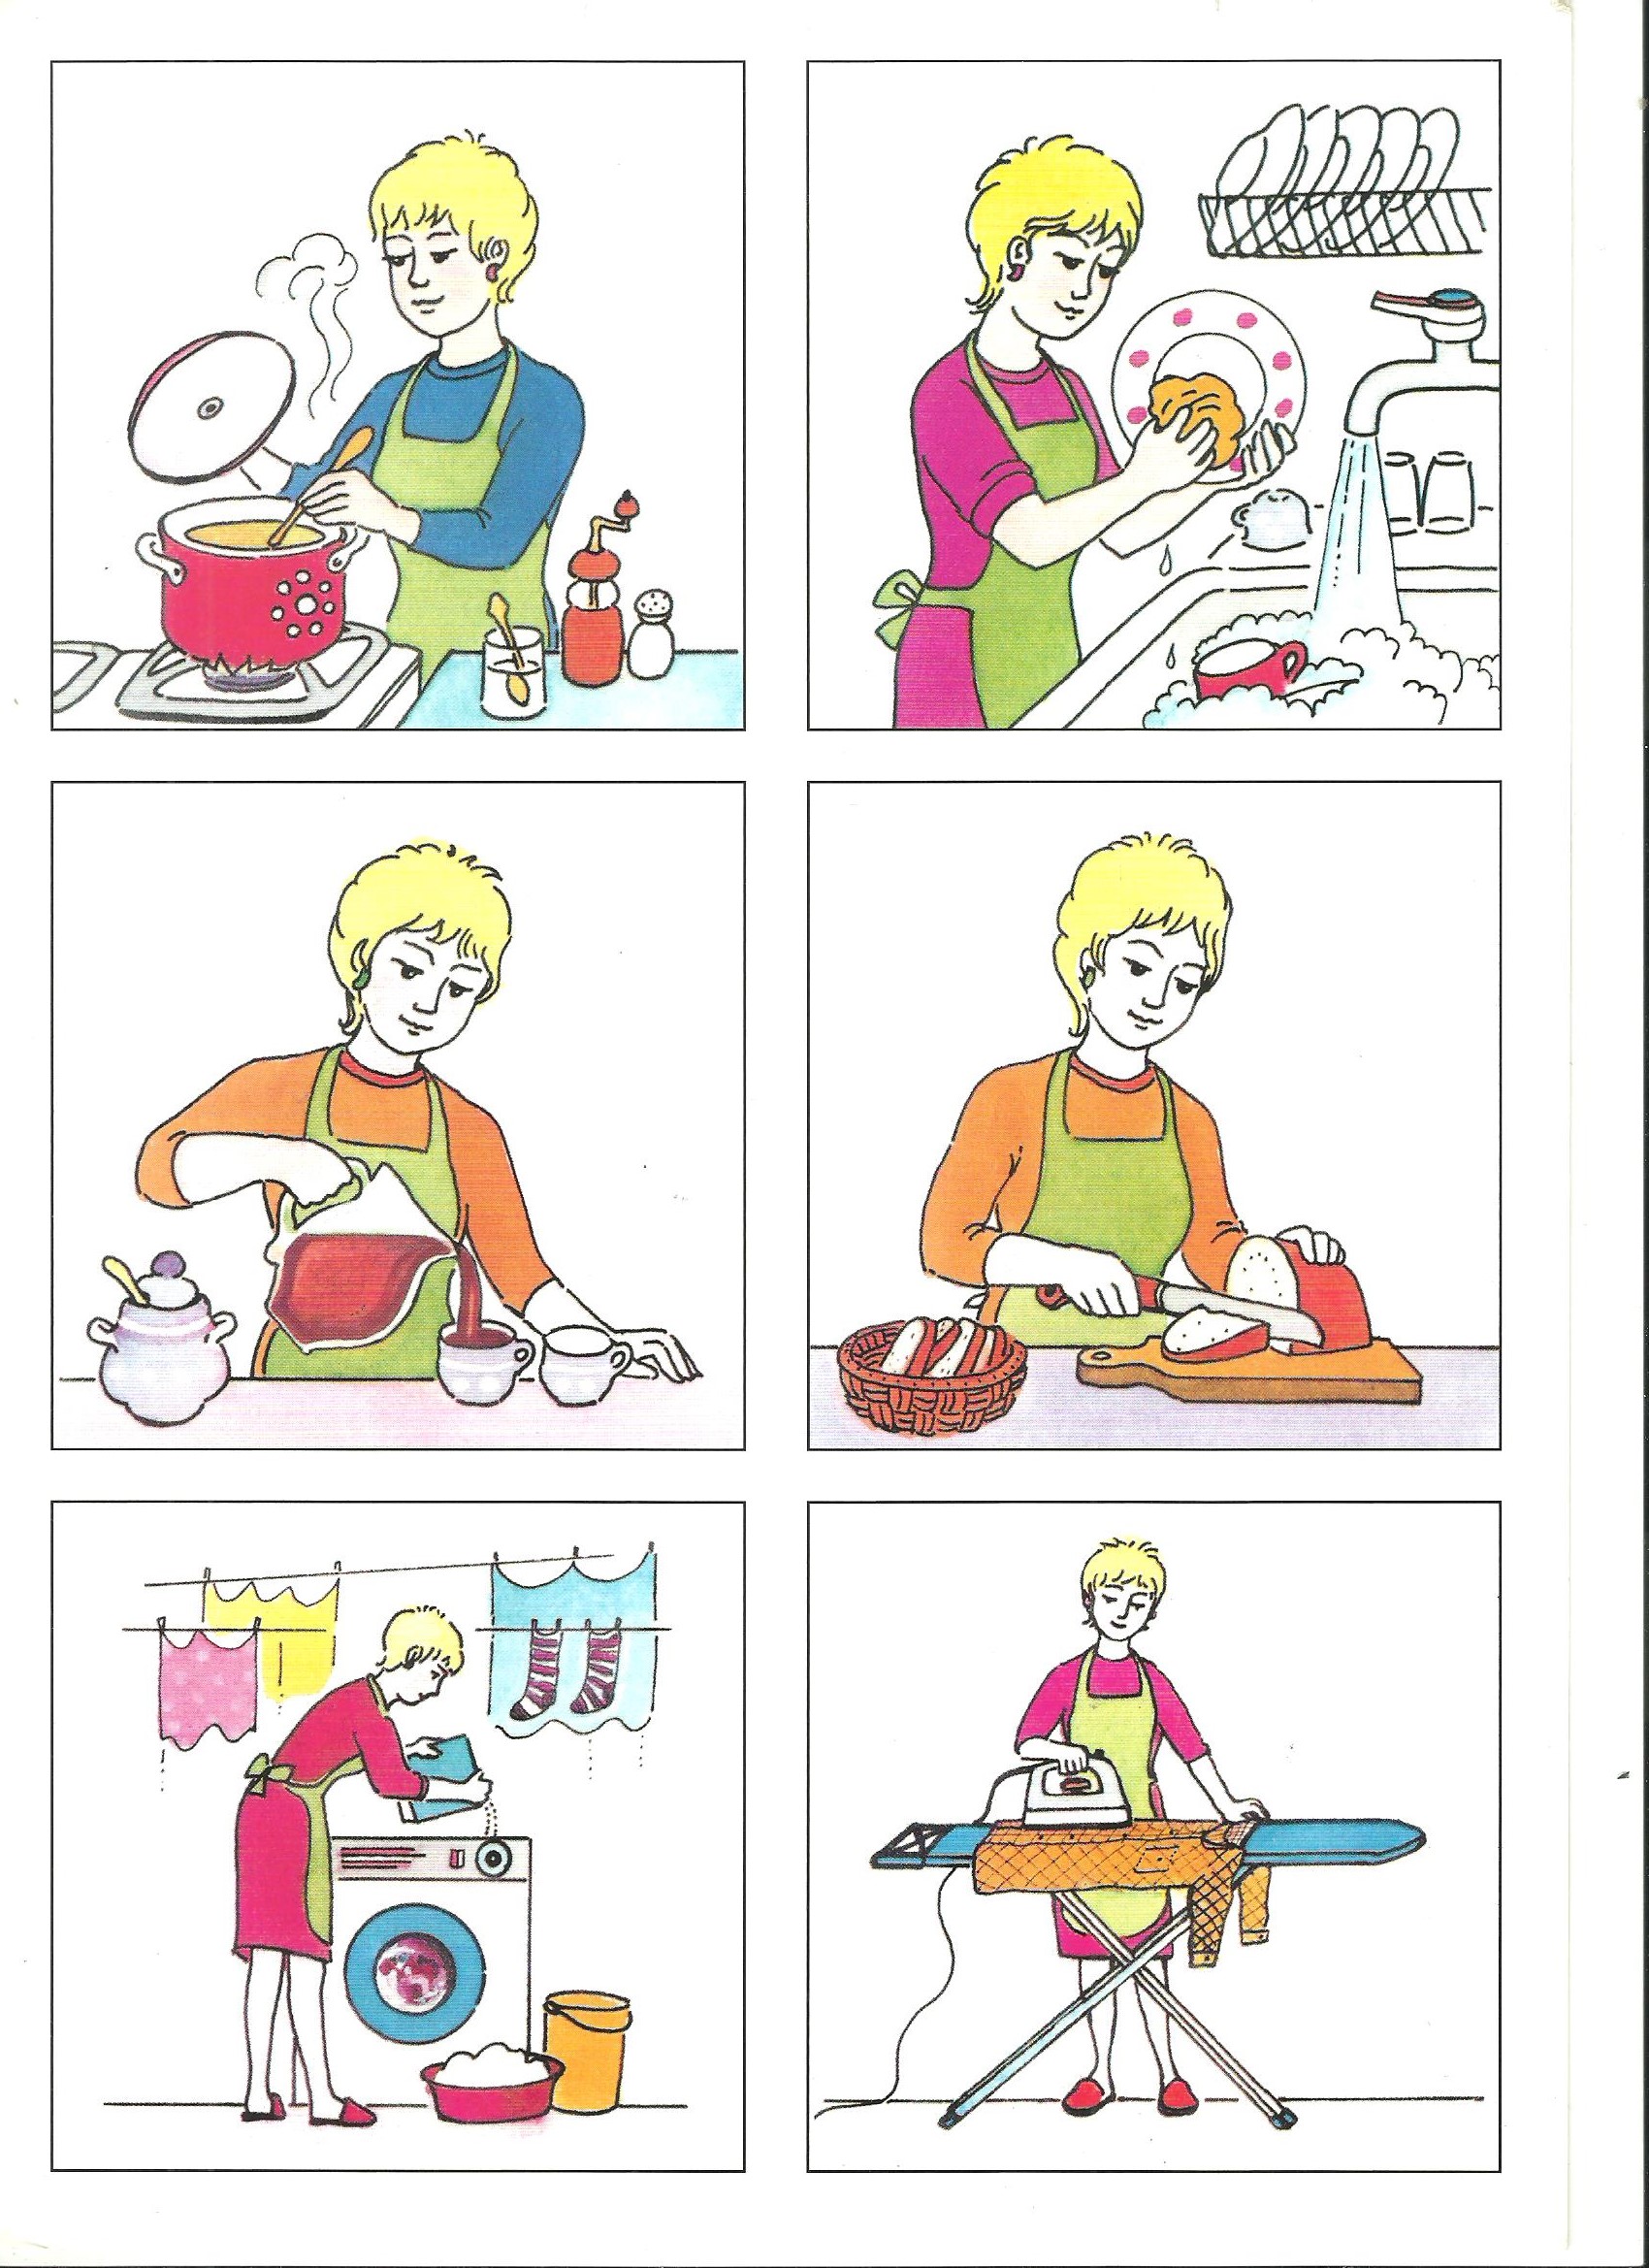 ilustracja prac domowych mamy